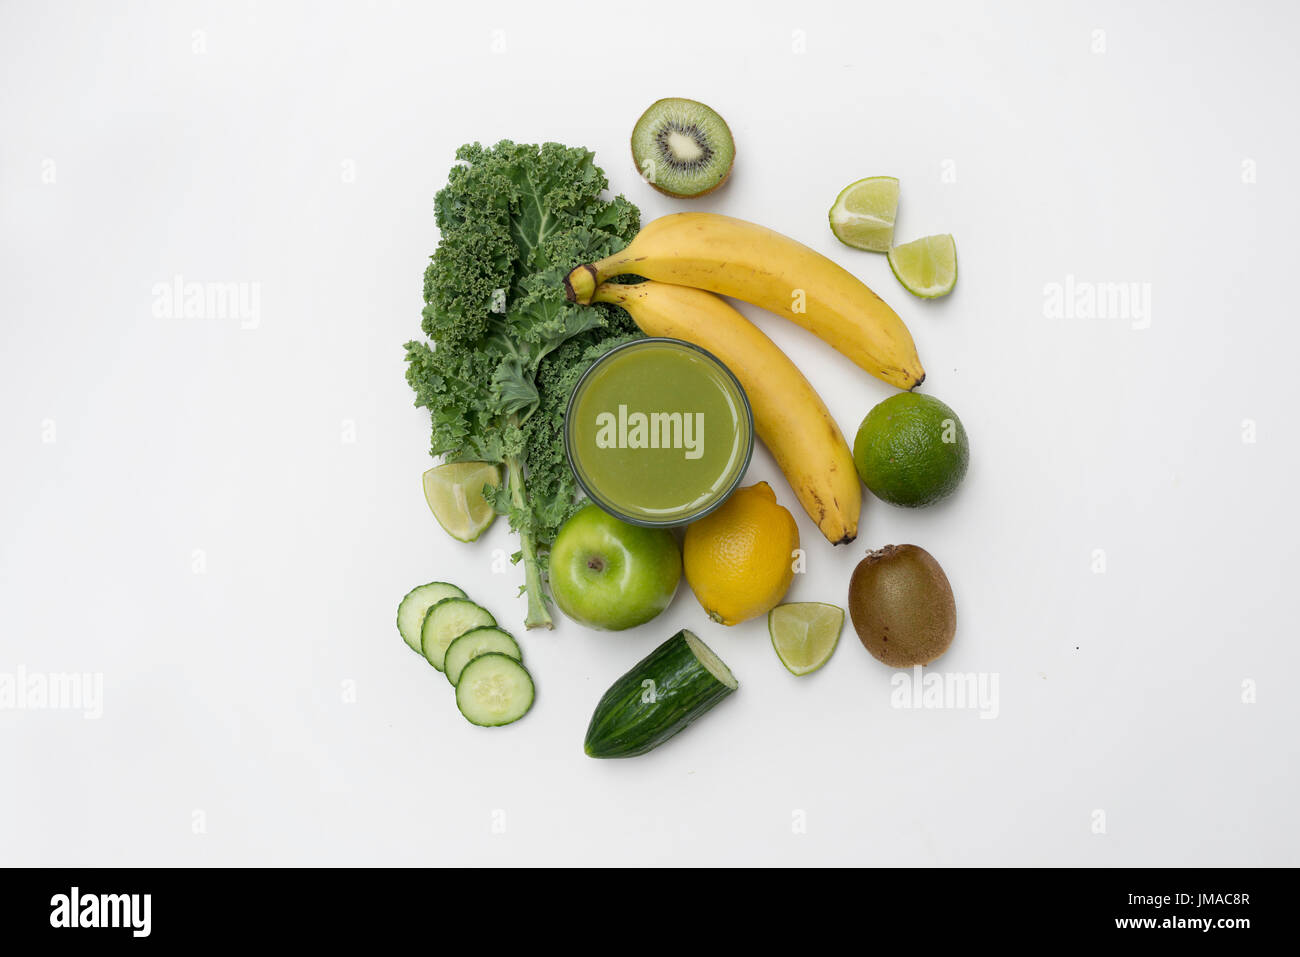 Vue du haut vers le bas d'un mode de vie sain smoothie vert fait à partir de fruits et légumes sur un fond blanc. Concept de vie. Banque D'Images